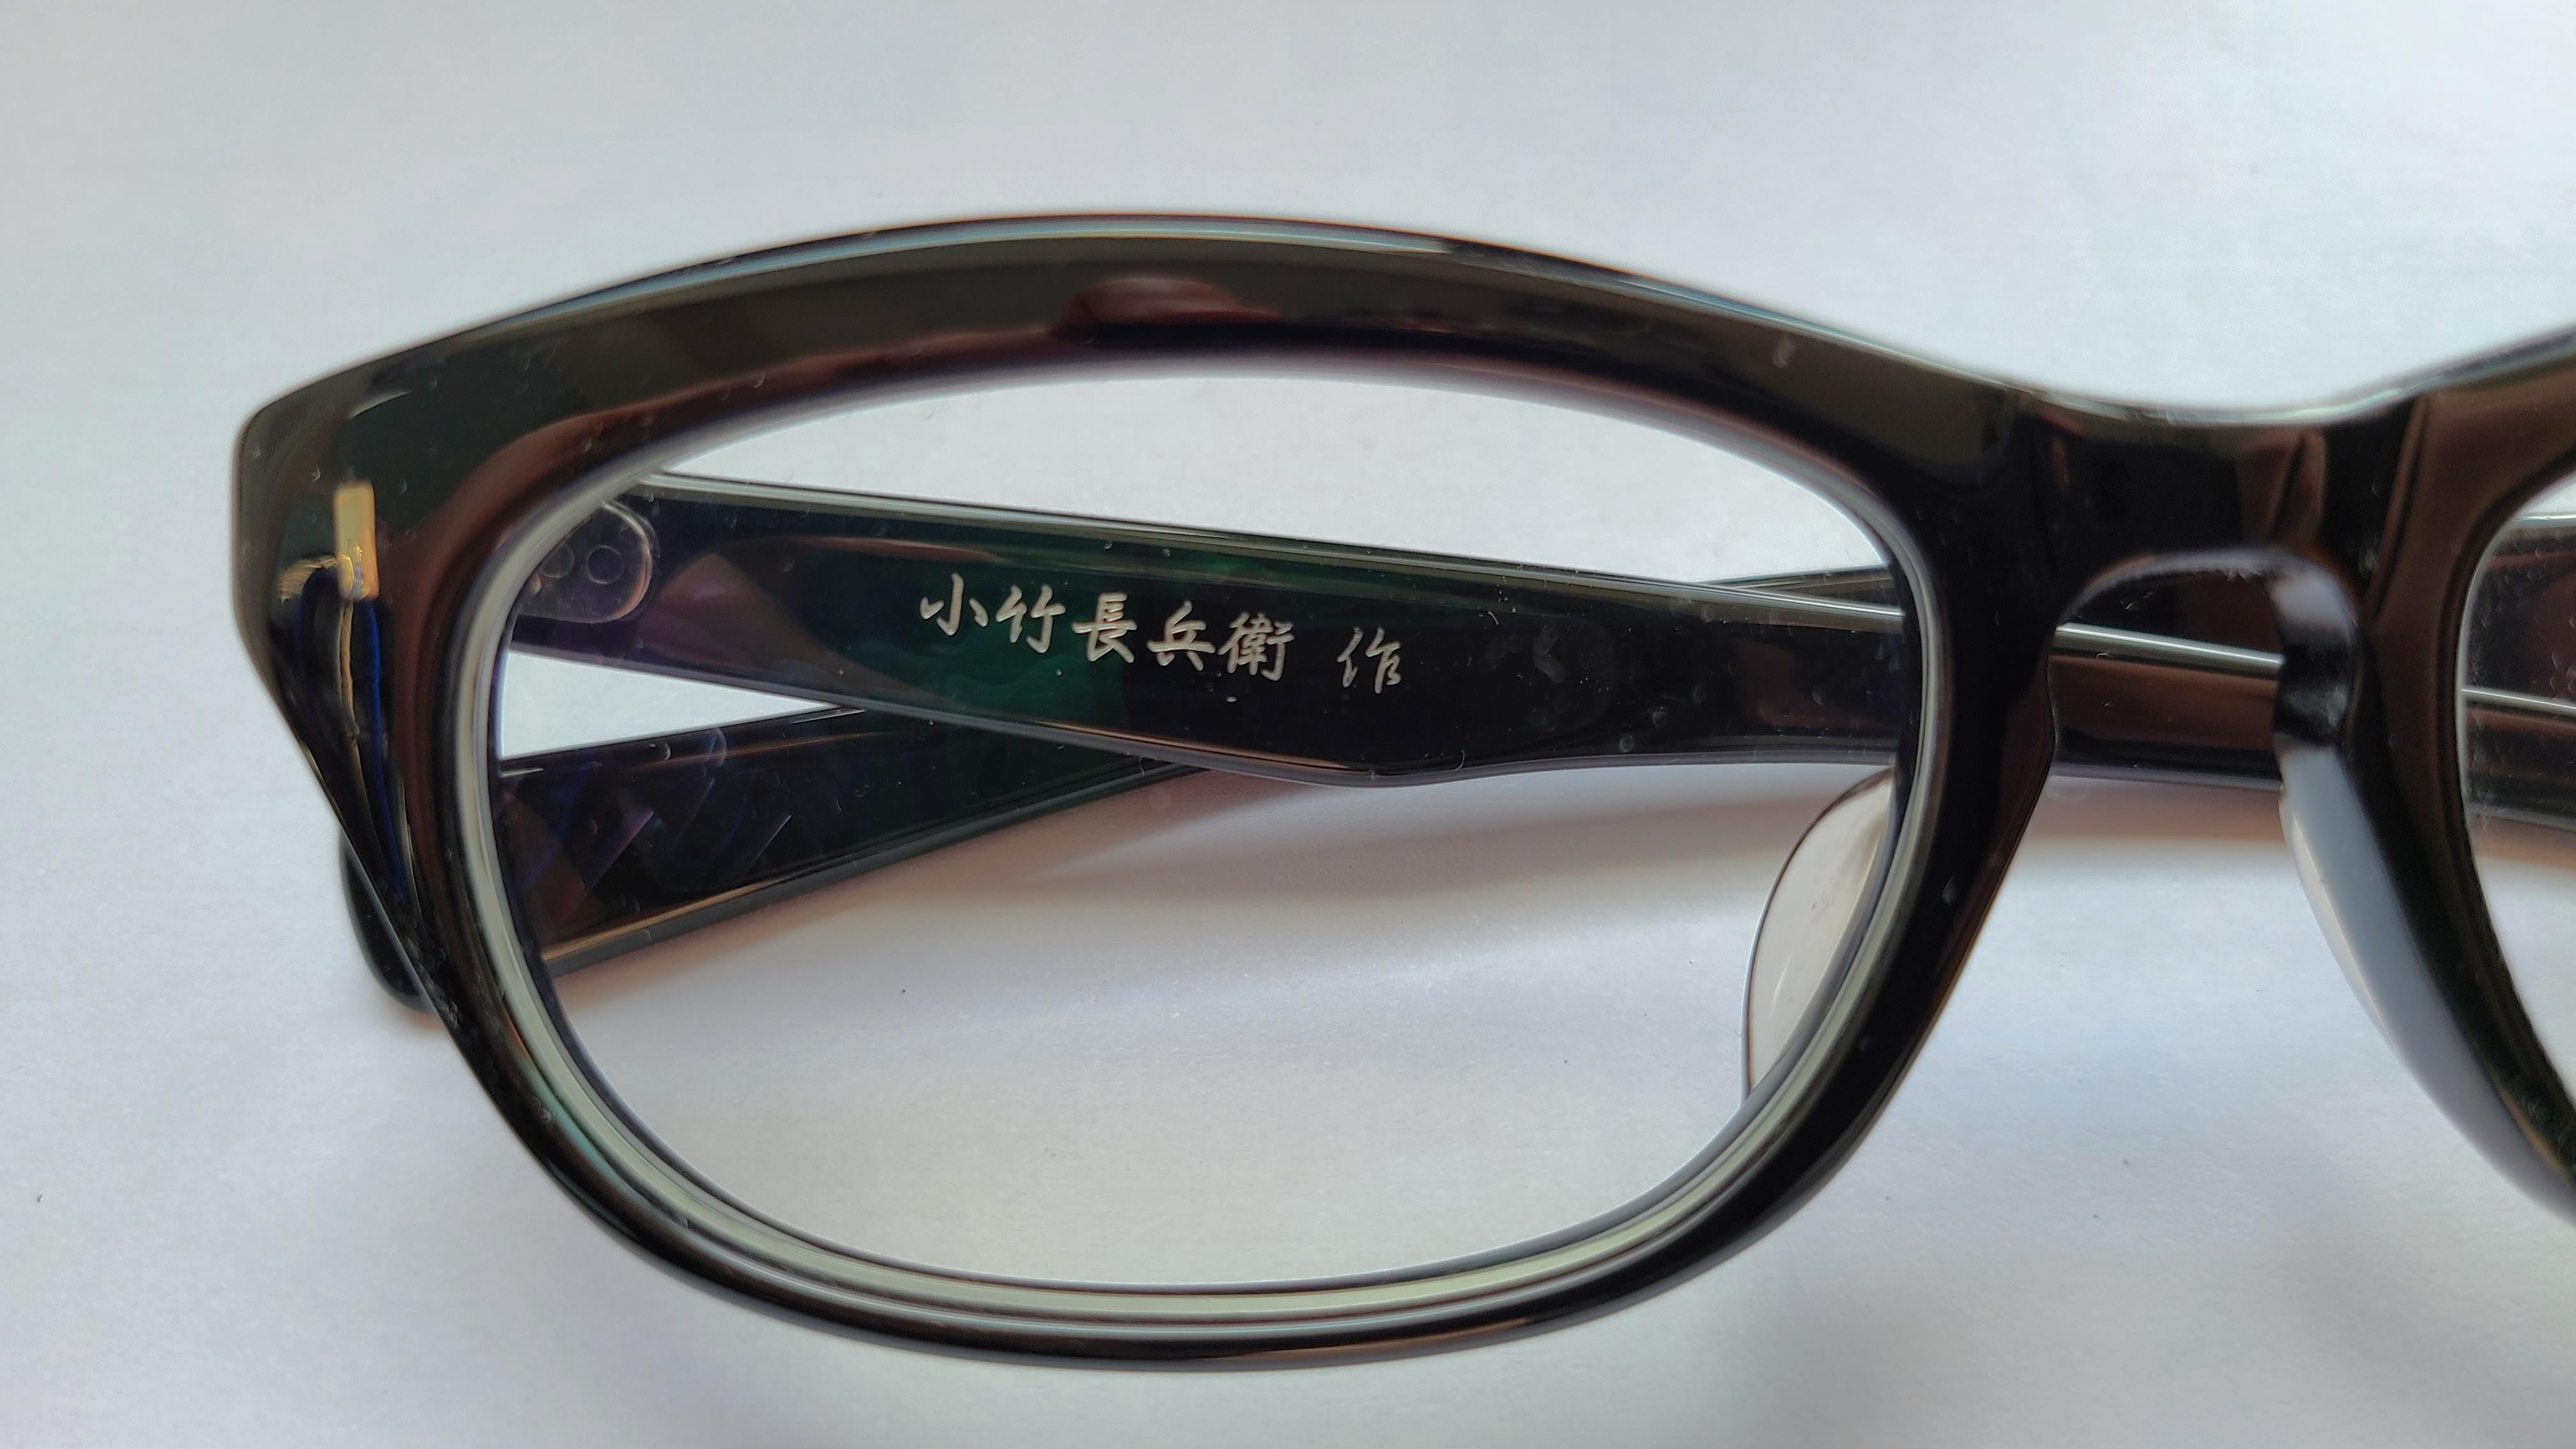 小竹長兵衛T319 BK (日本絕版手造眼鏡), 男裝, 手錶及配件, 眼鏡